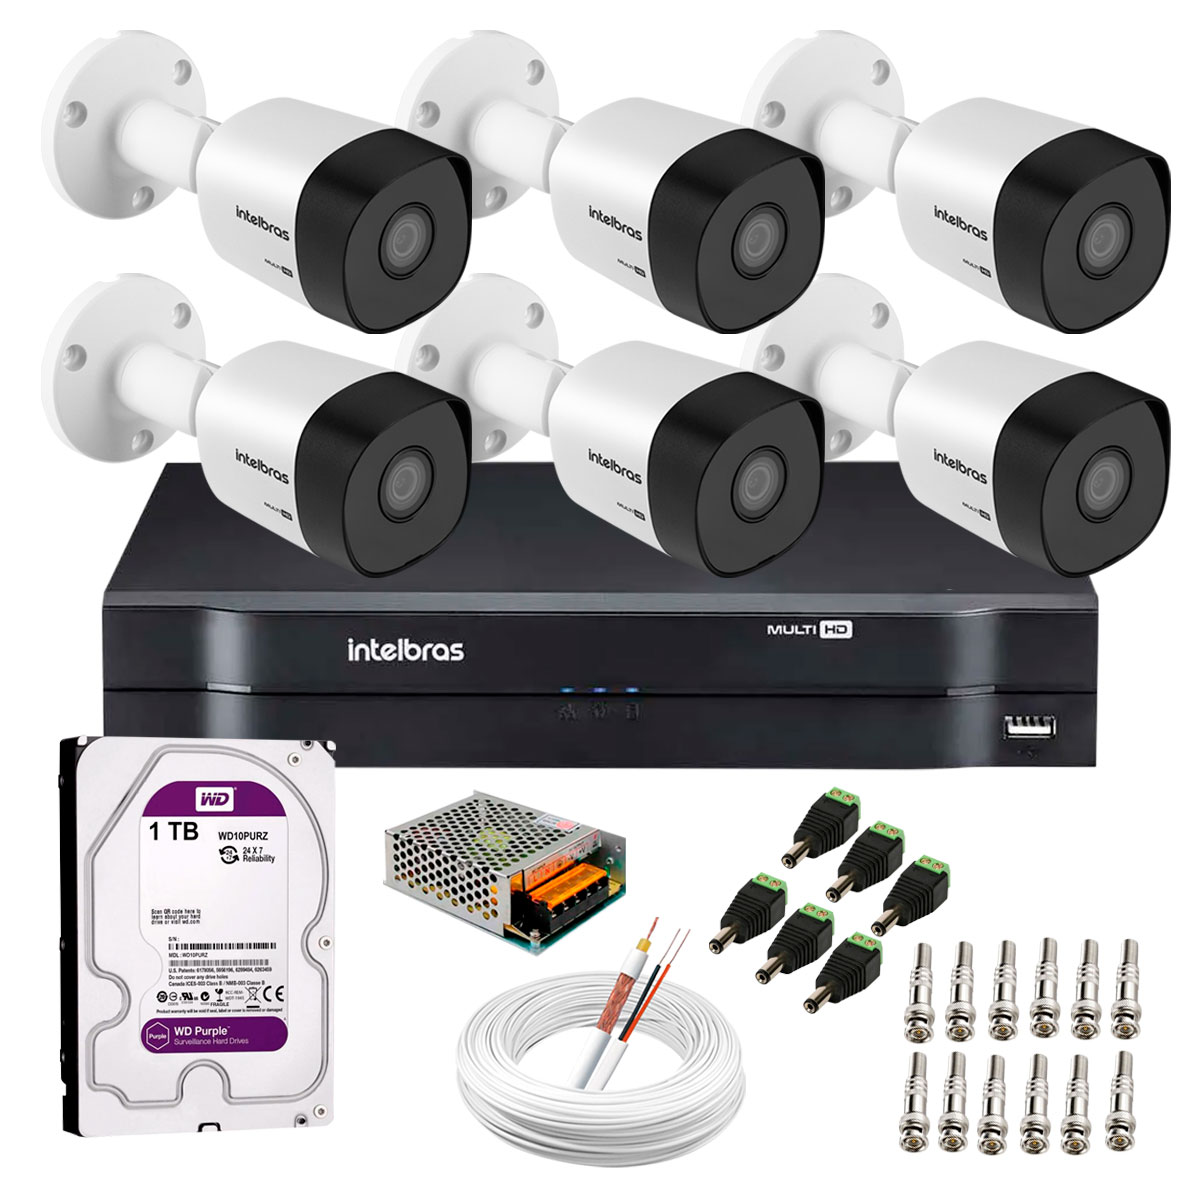 kit-6-cameras-vhd-3130-b-g6-dvr-intelbras-hd-1tb-para-armazenamento-app-gratis-de-monitoramento-cameras-hd-720p-30m-infravermelho-de-visao-noturna-intelbras-fonte-cabos-e-acessorios